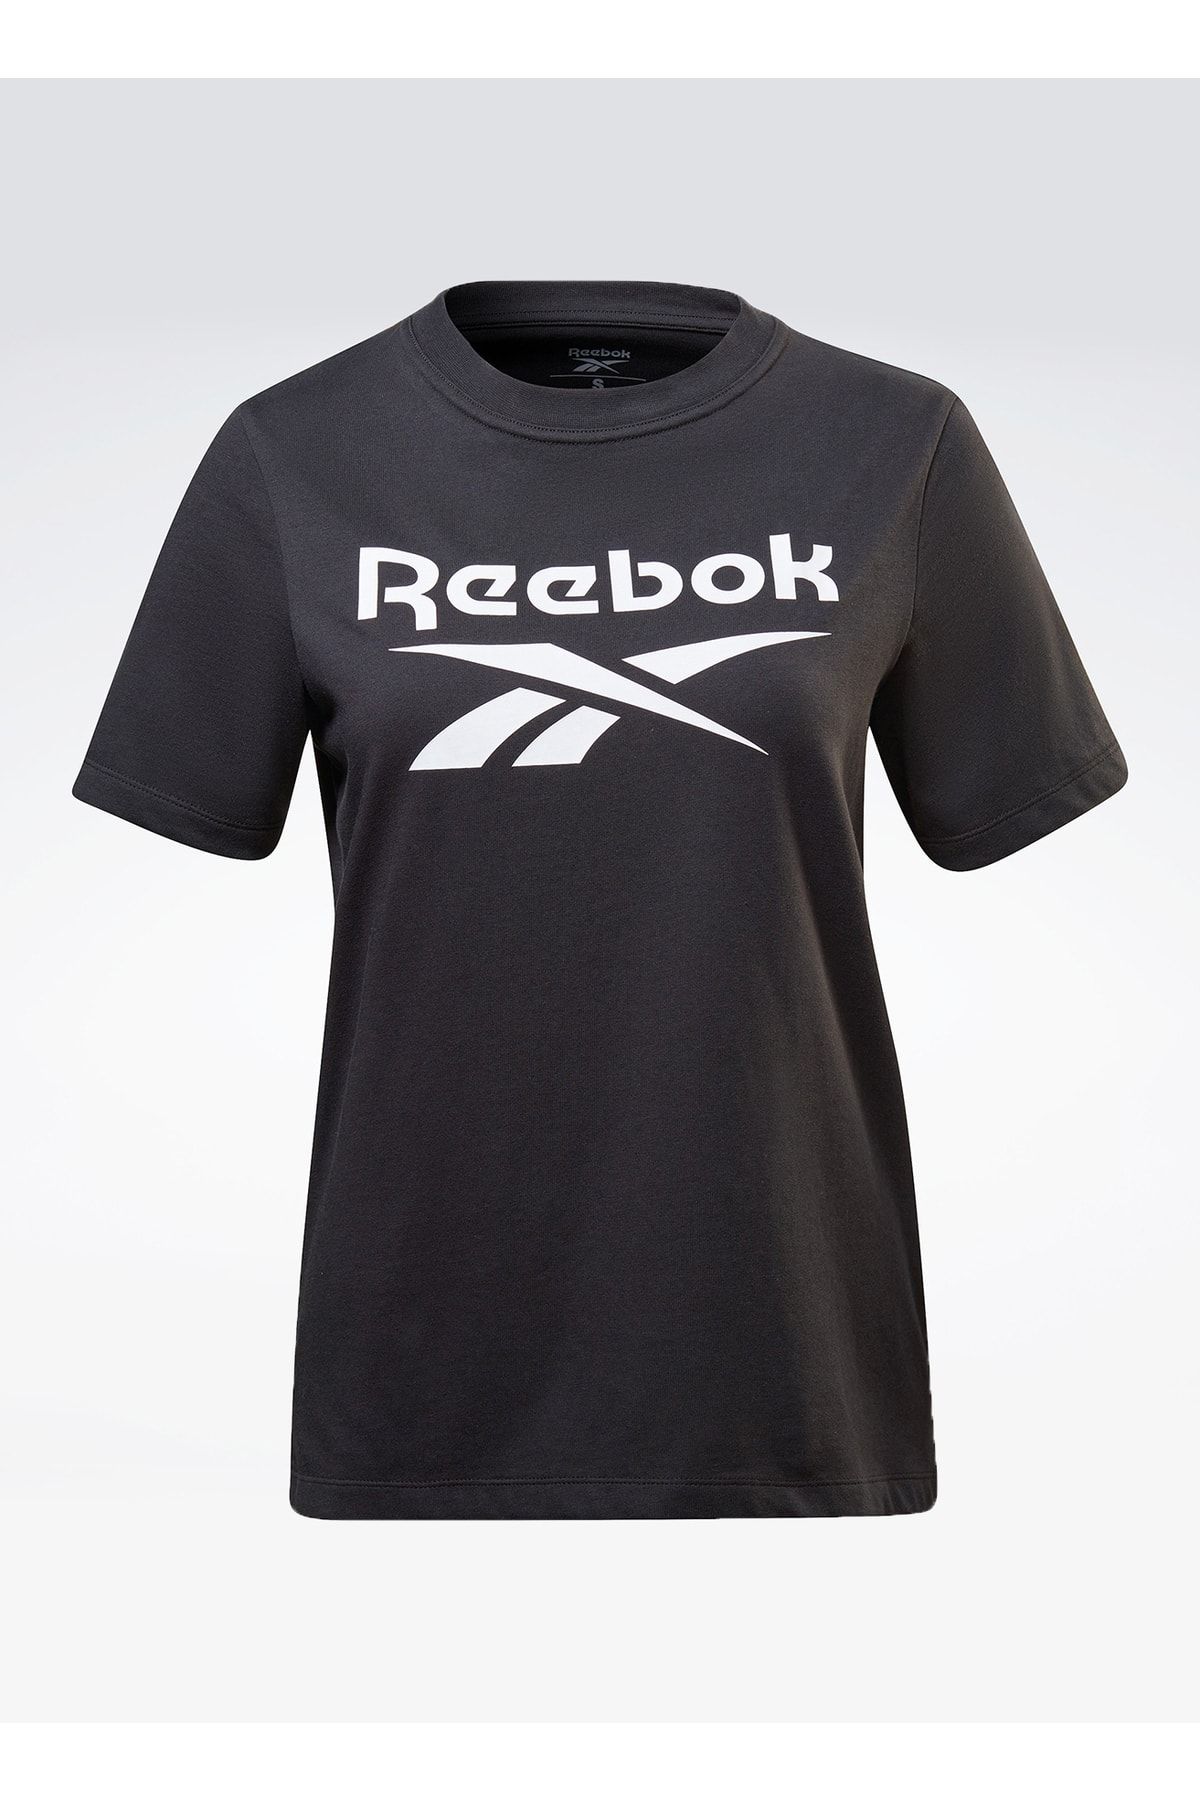 Reebok Yuvarlak Yaka Düz Siyah Kadın T-shirt Hb2271 Rı Bl Tee